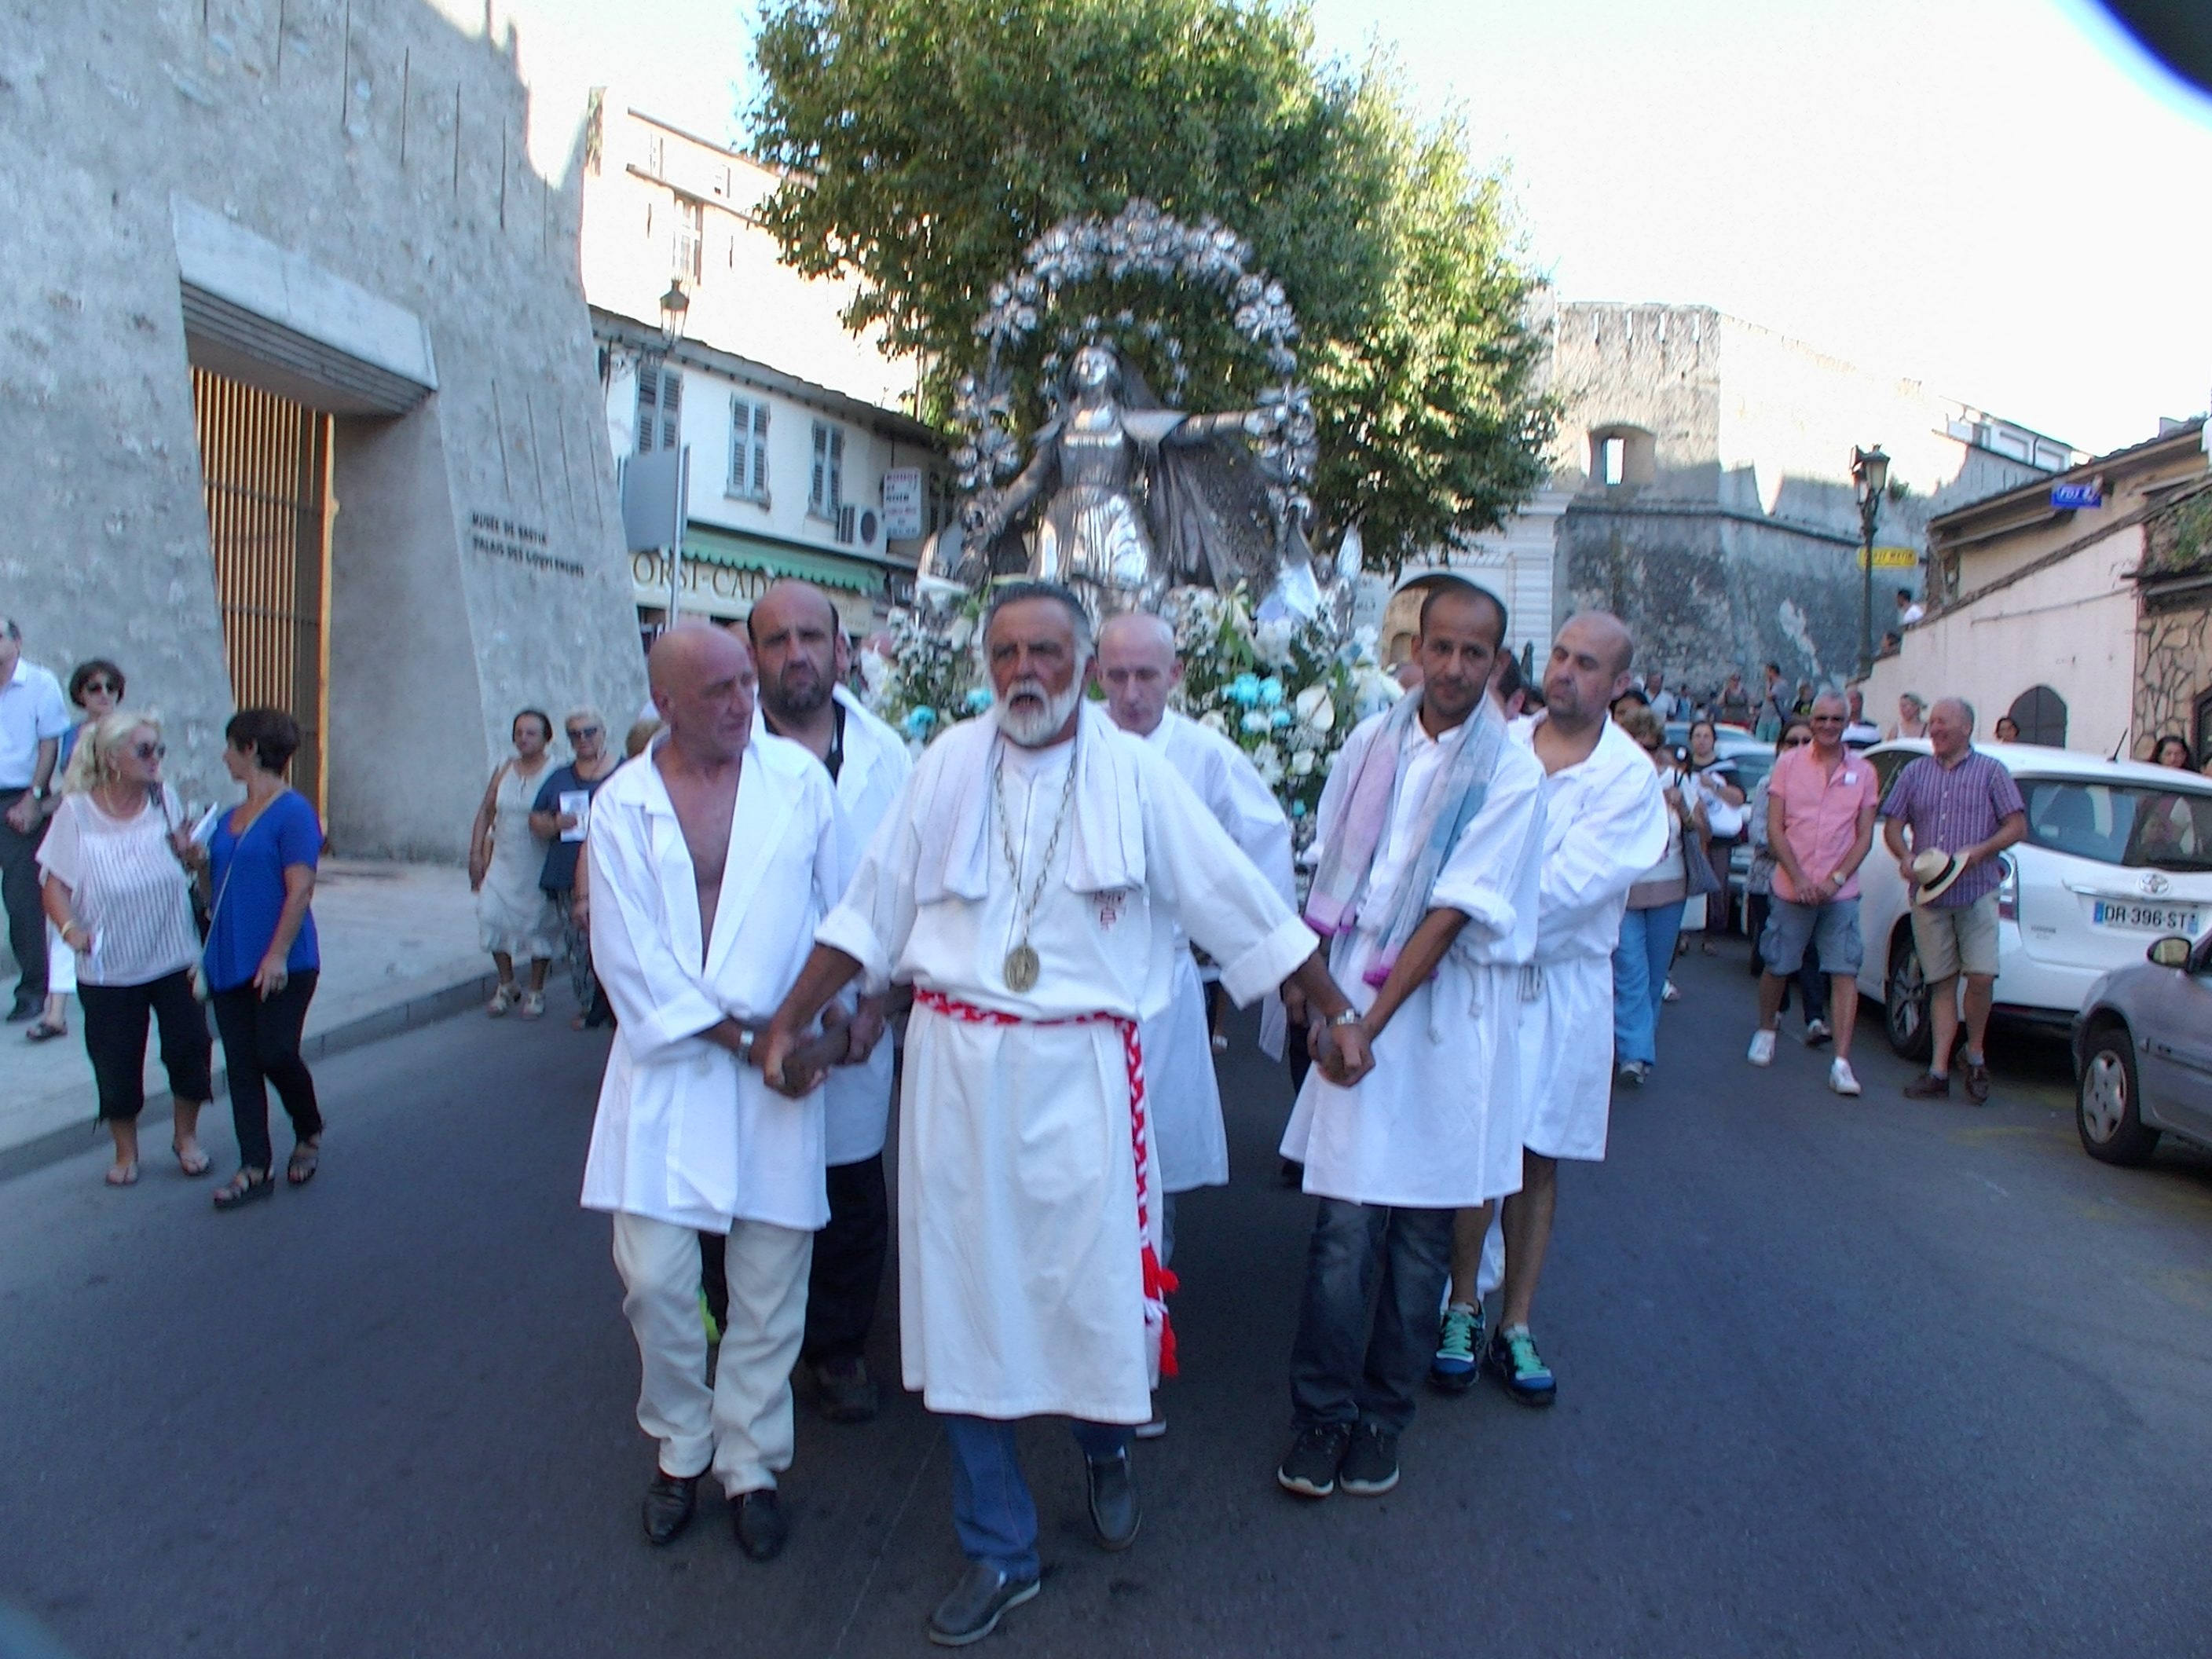 Bastia : Emotion, recueillement, ferveur pour la fête de l’Assomption